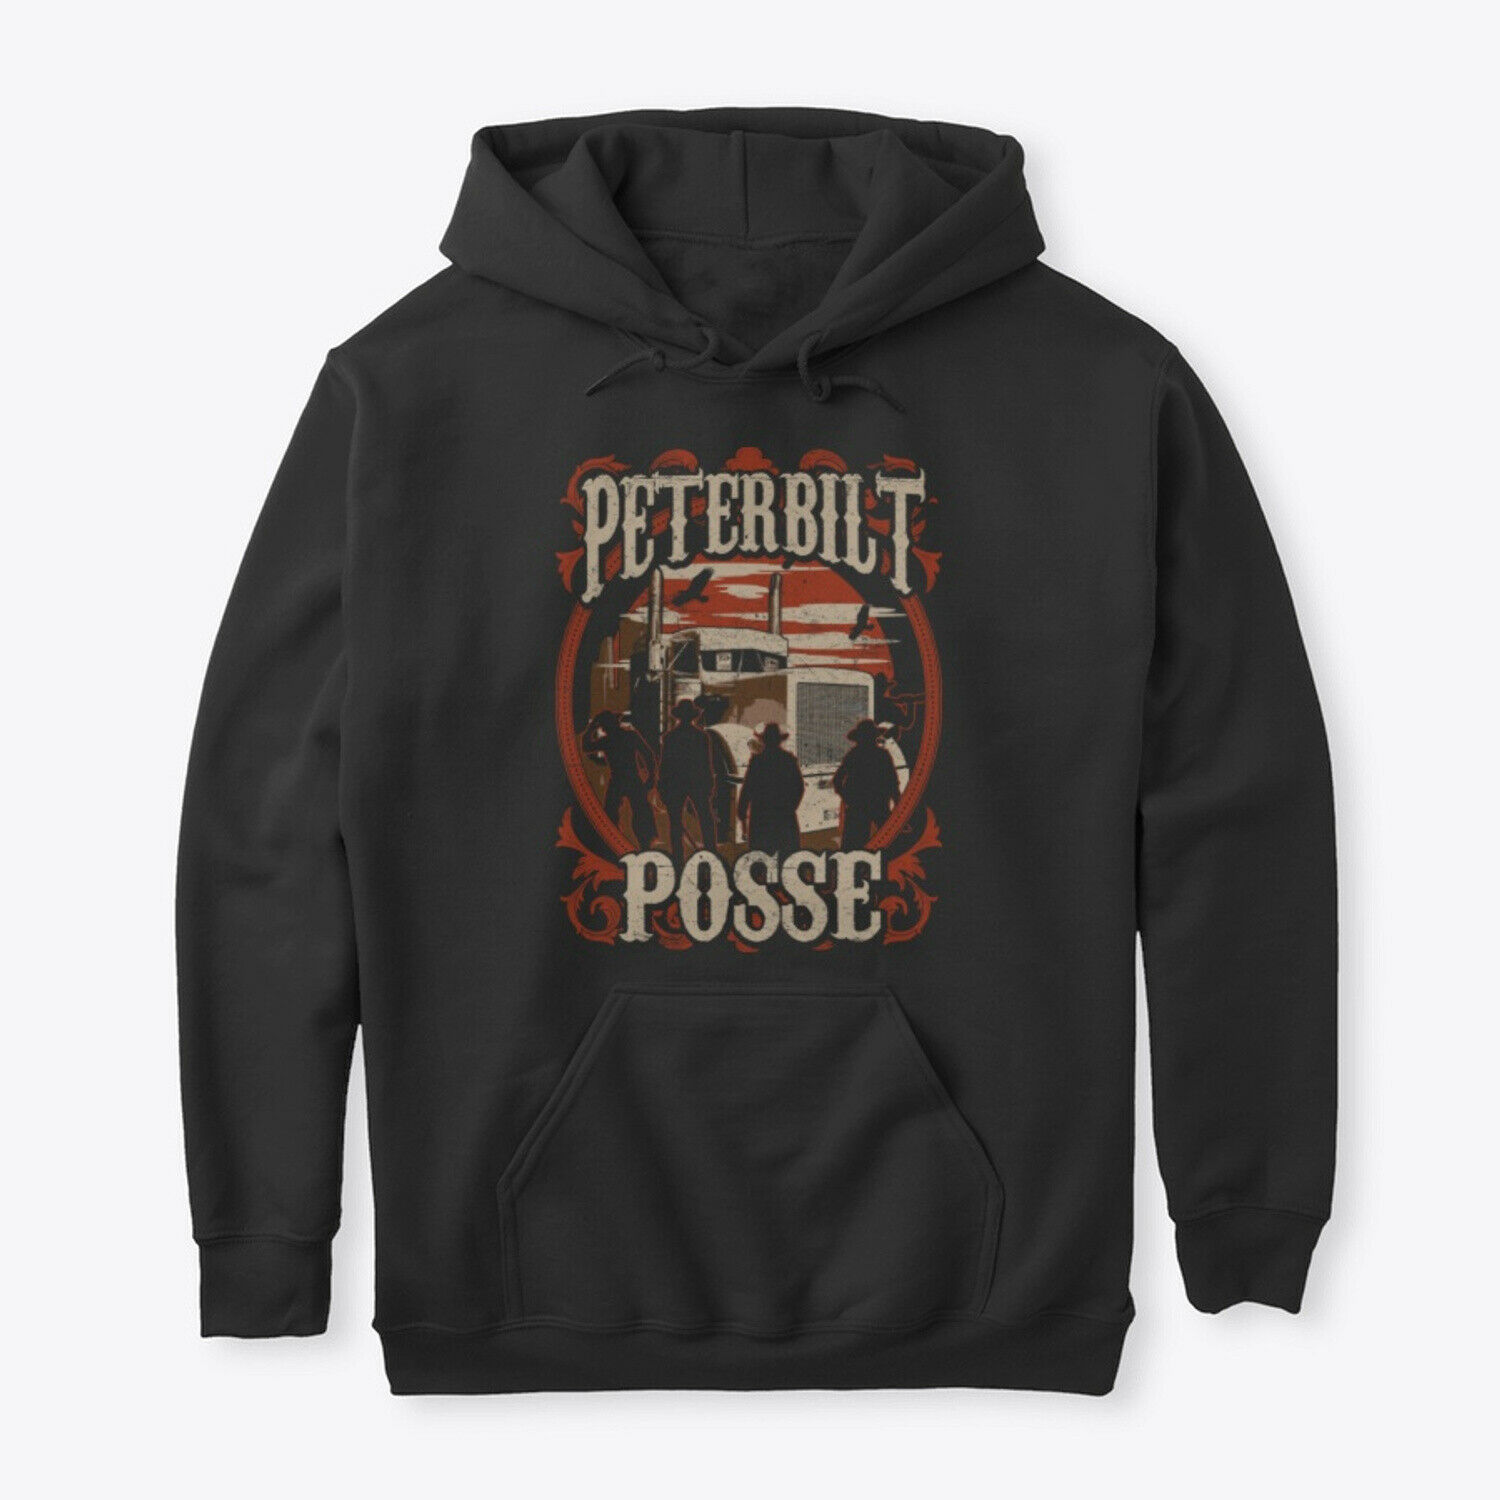 Peterbilt Posse Hoodie